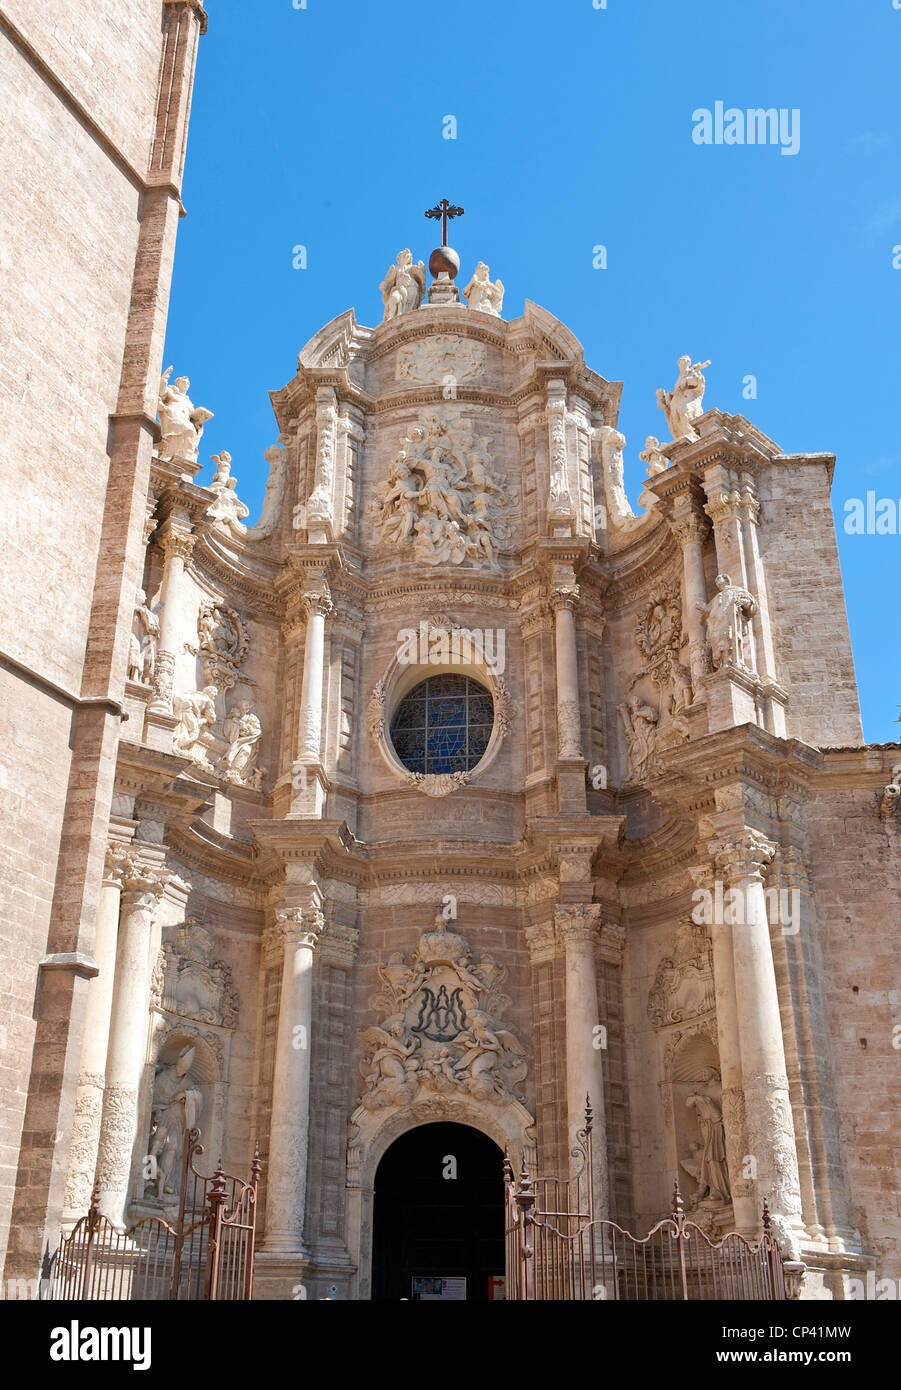 Entrée principale de la cathédrale de Valence Espagne Banque D'Images